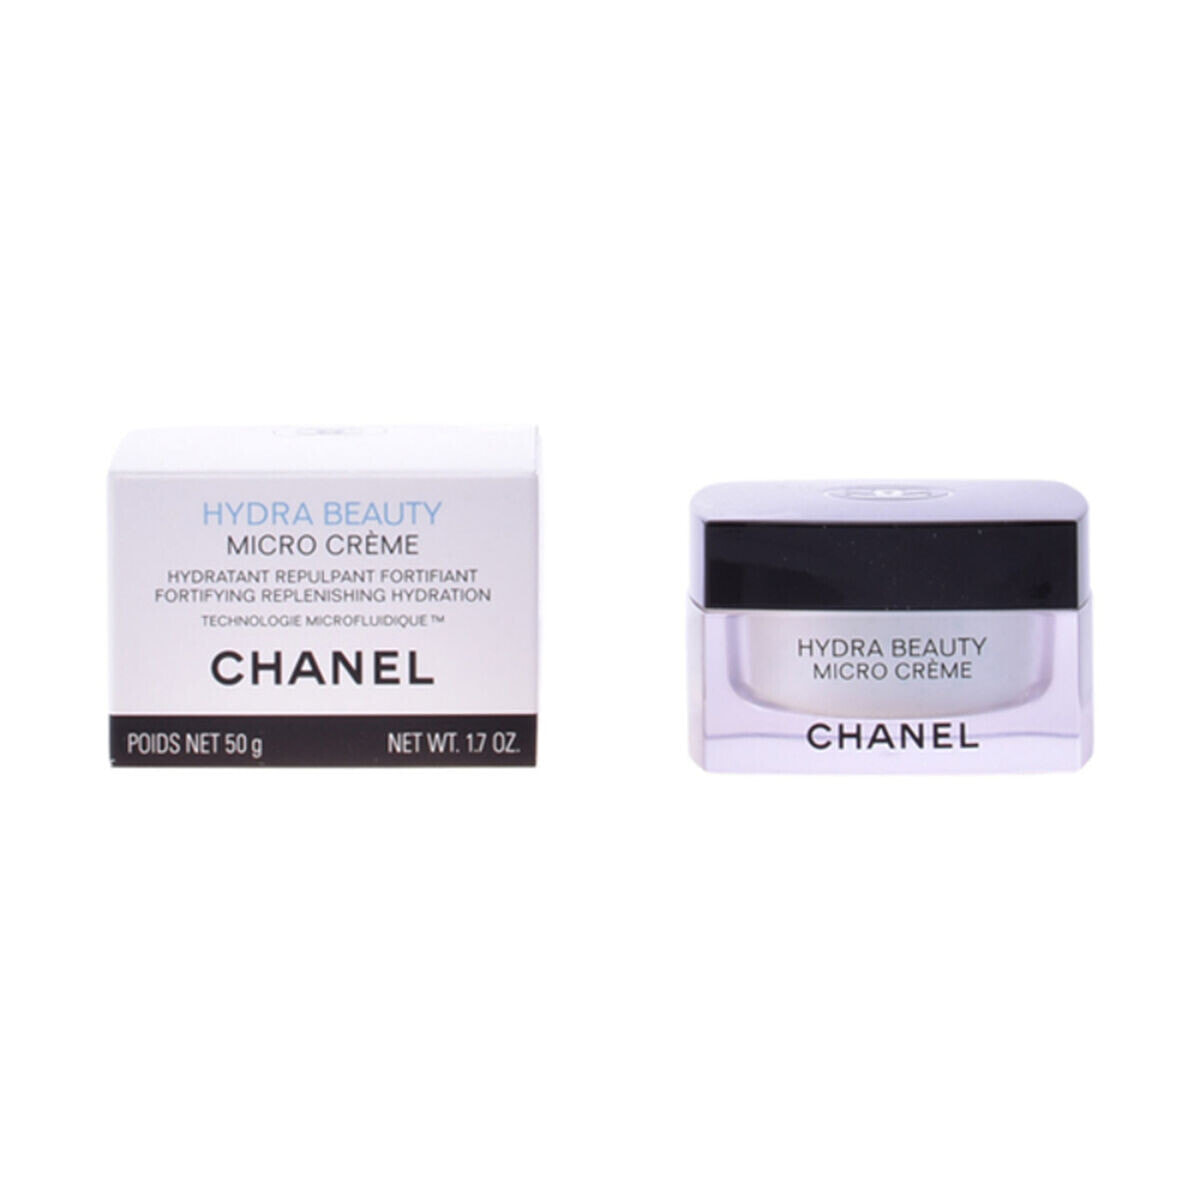 Chanel Hydra Beauty Micro Creme Крем для увлажнения, укрепления и повышения упругости кожи лица 50 мл